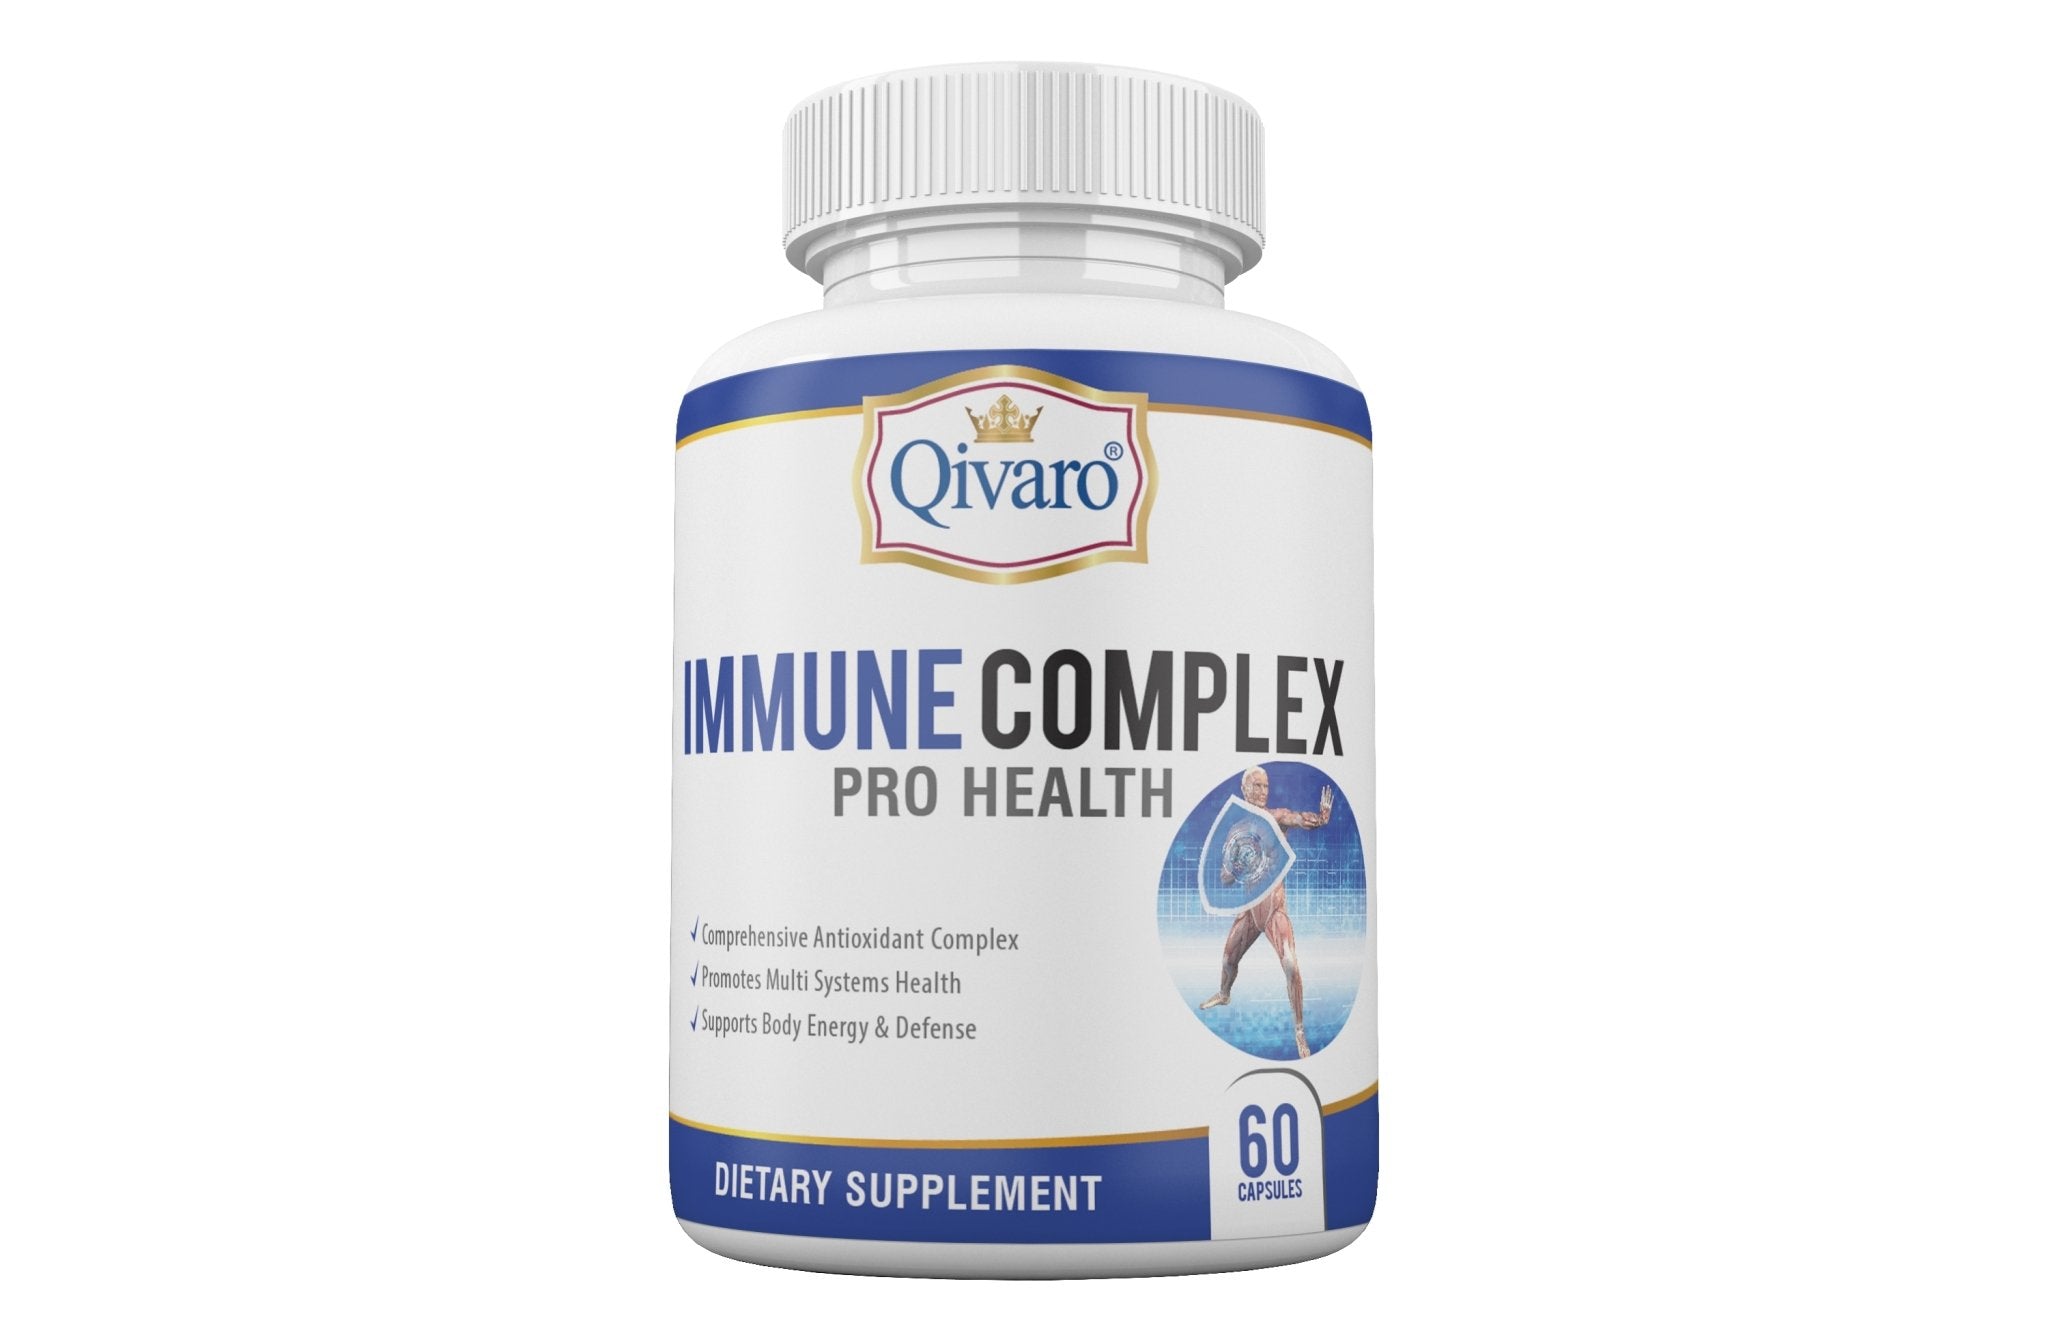 Immune Complex Pro Health By Qivaro (60 capsules) - Qivaro USA